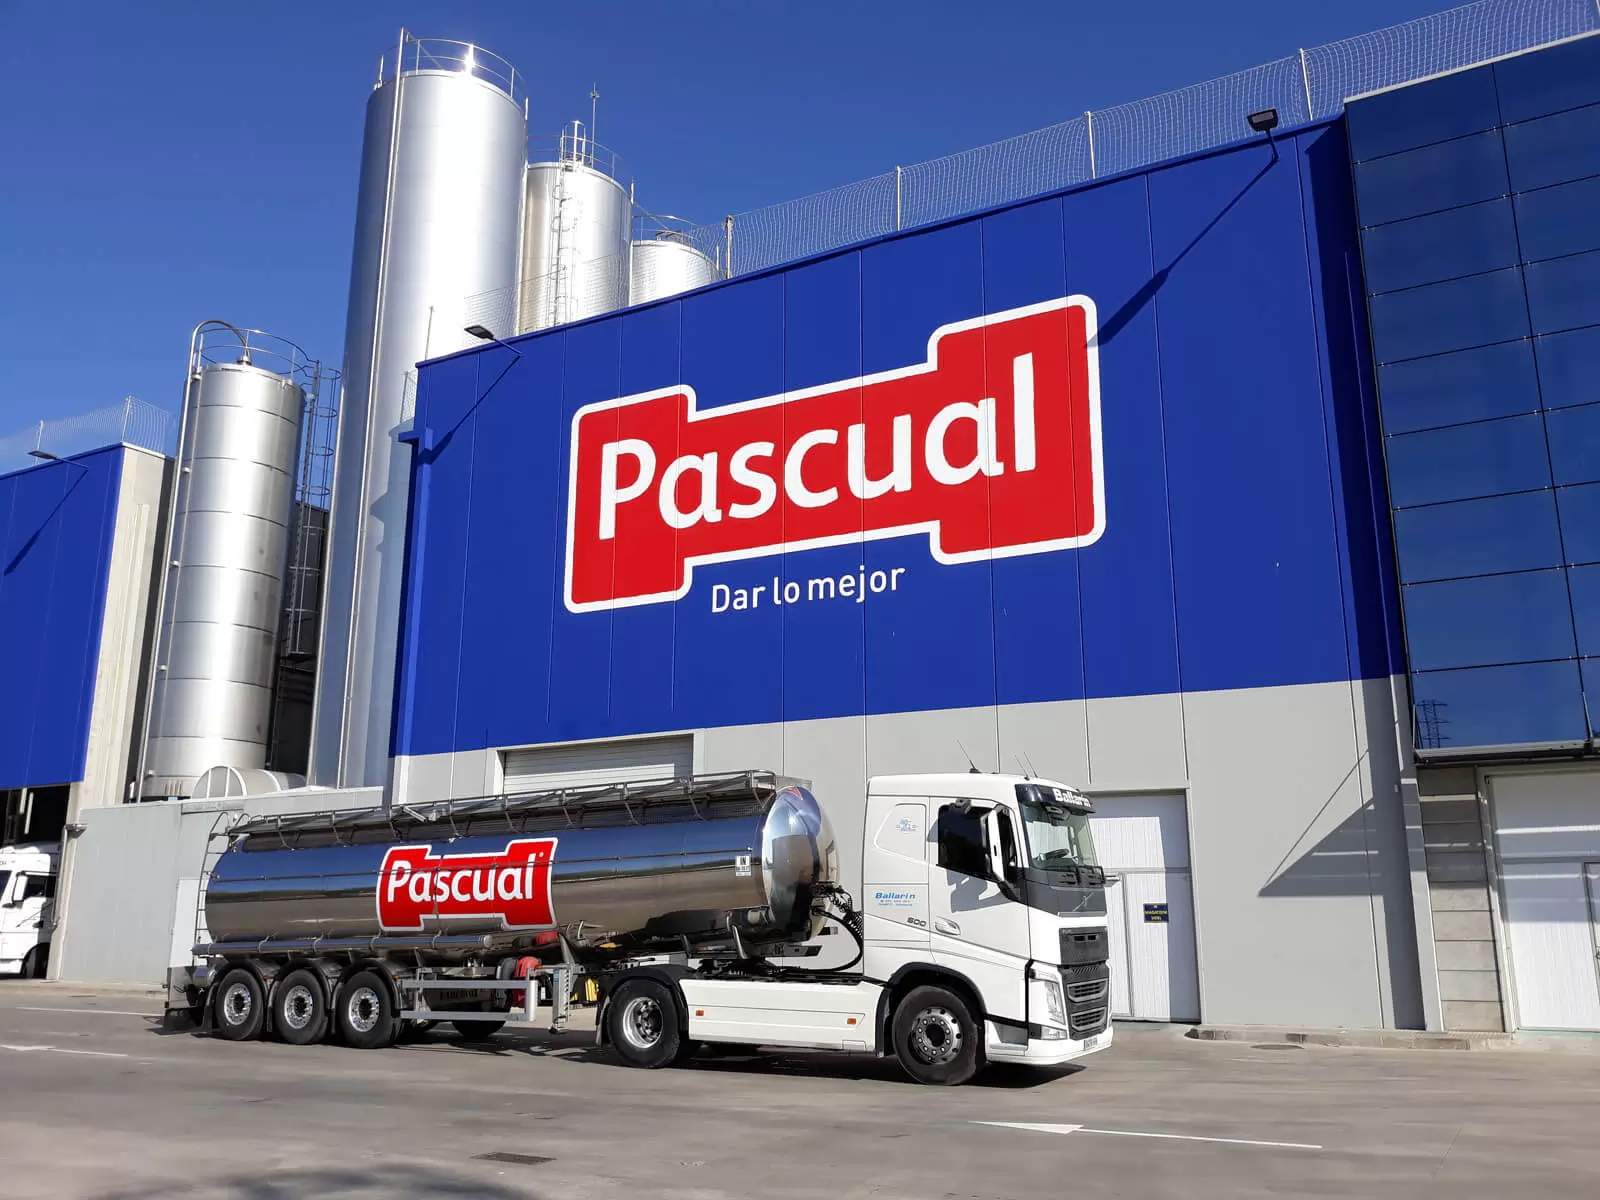 Pascual buscará otras vías para vender su leche tras ser excluida de lineales de Mercadona